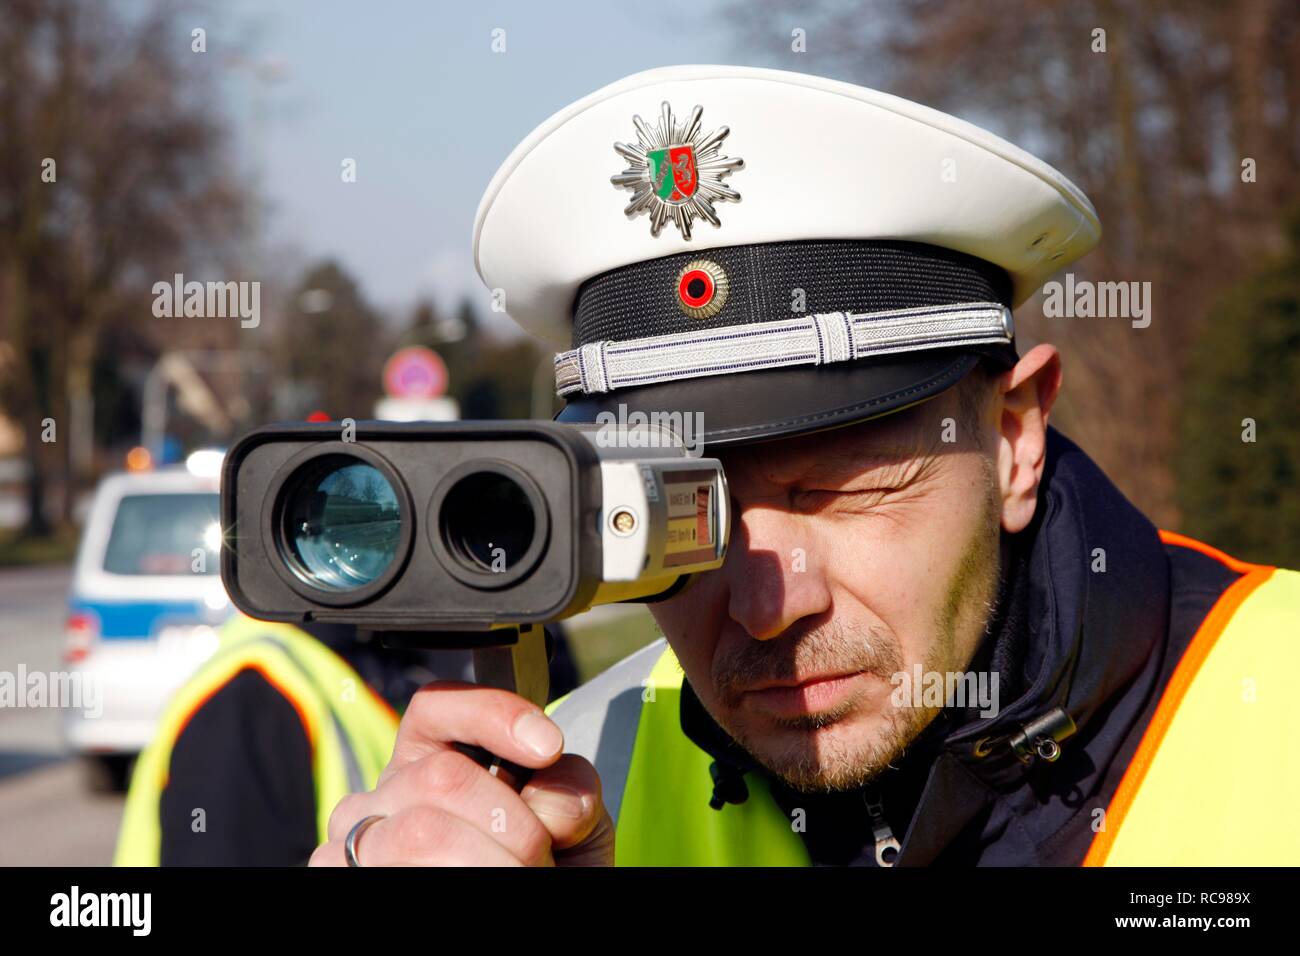 Polizist mit einem Laser Geschwindigkeit Messgerät, Geschwindigkeit prüfen  Marathon von der Polizei in Nordrhein-Westfalen am 10. Februar  Stockfotografie - Alamy